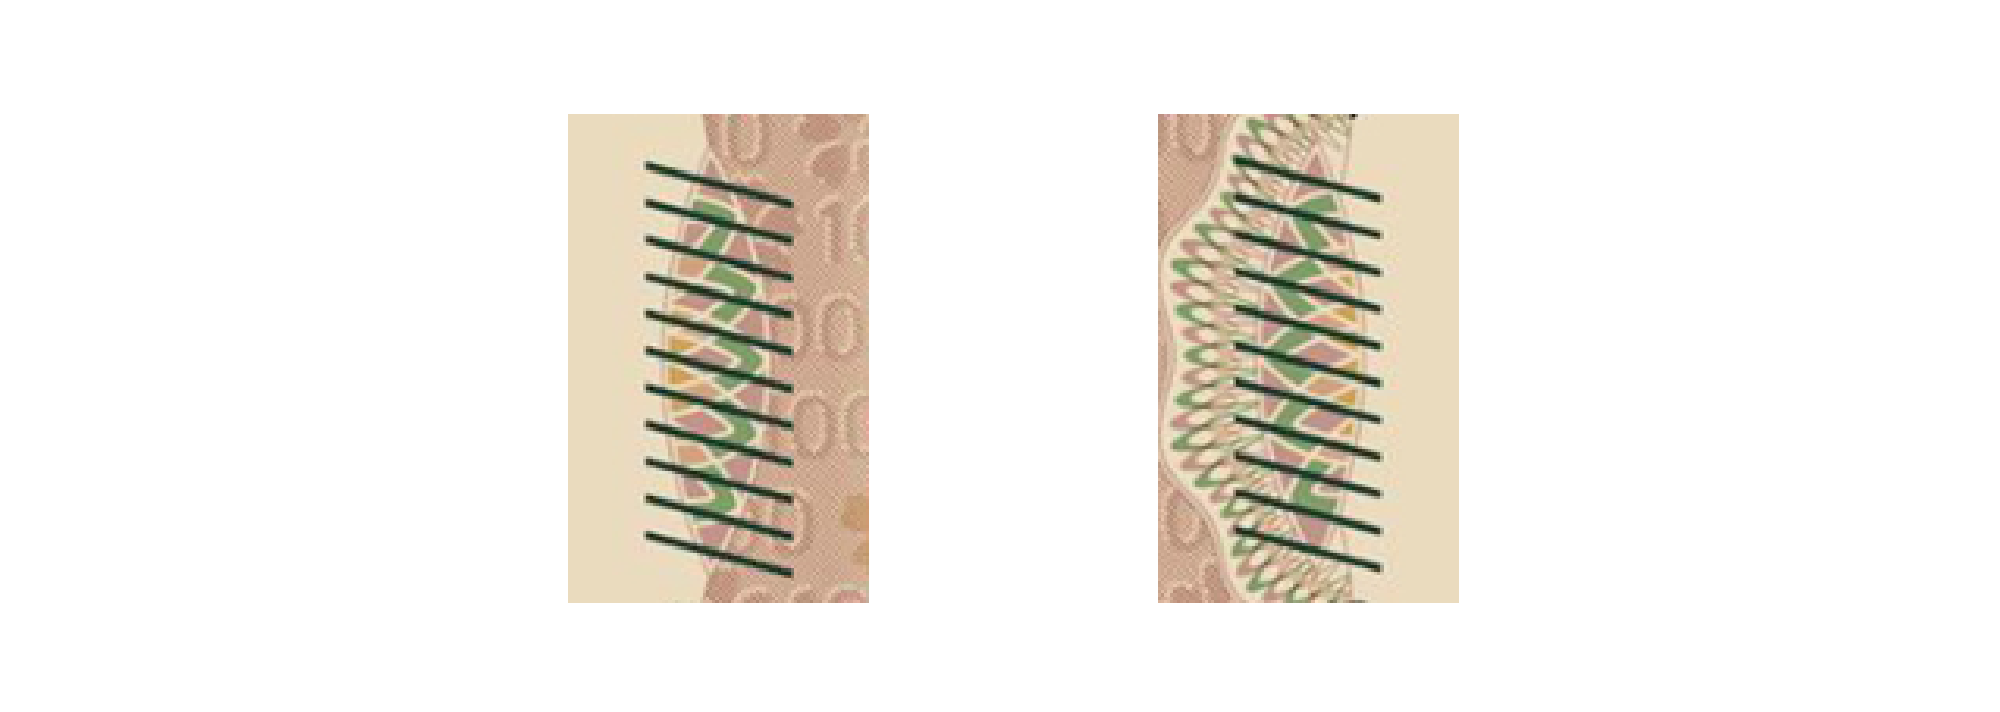 一万円券表面の左右にある、並列する11本の斜線で構成された識別マークの画像。